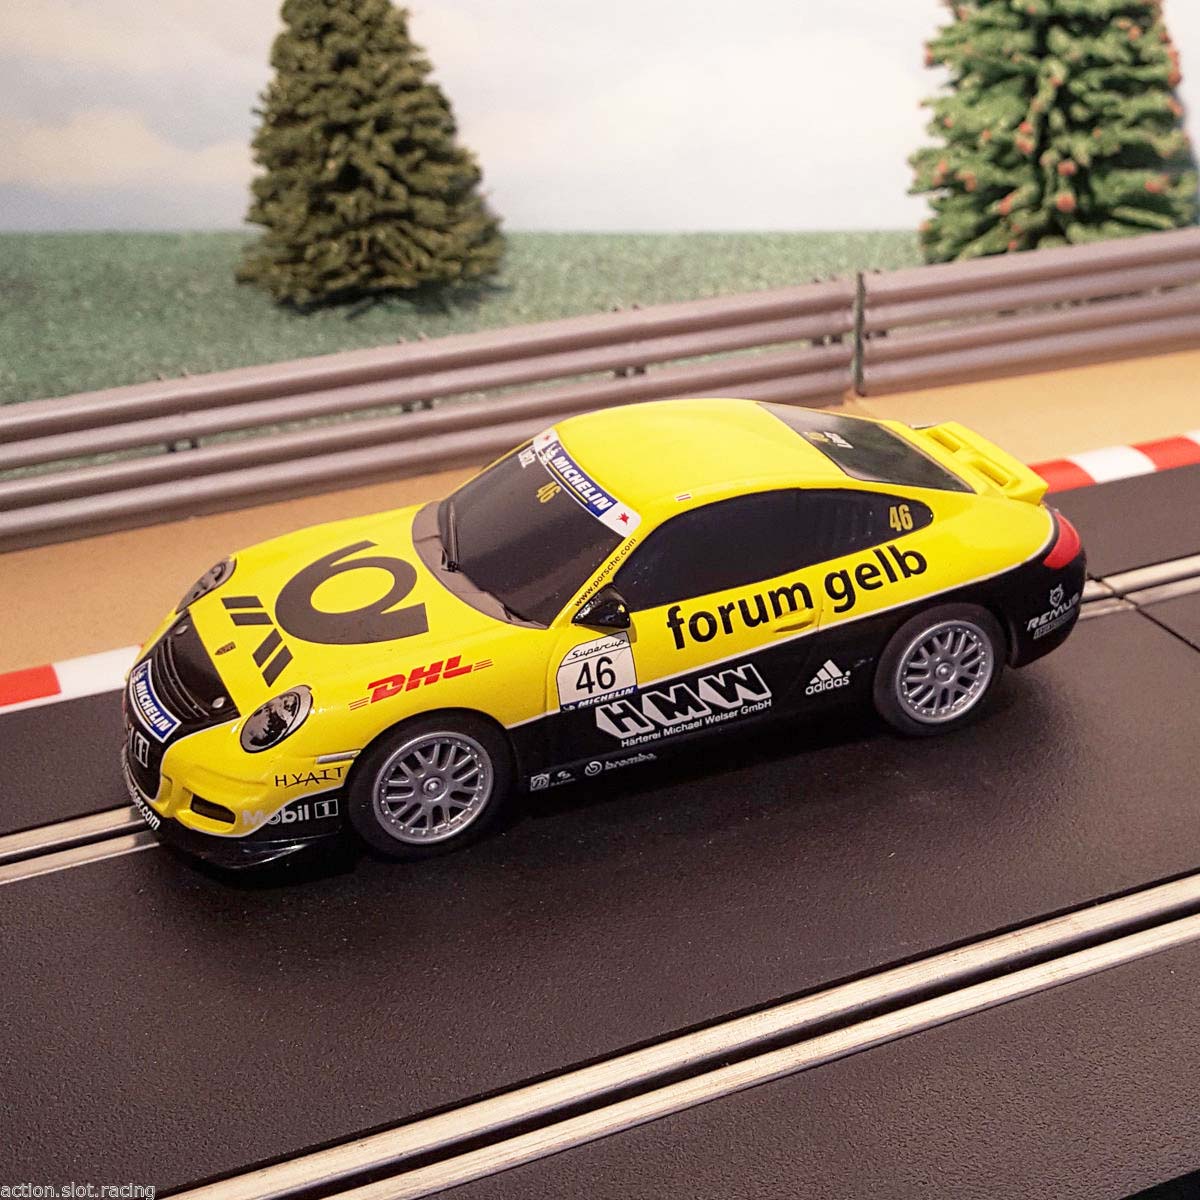 Scalextric 1:32 Car - C3079 Yellow Porsche 997 'Forum Gelb' #46 #S